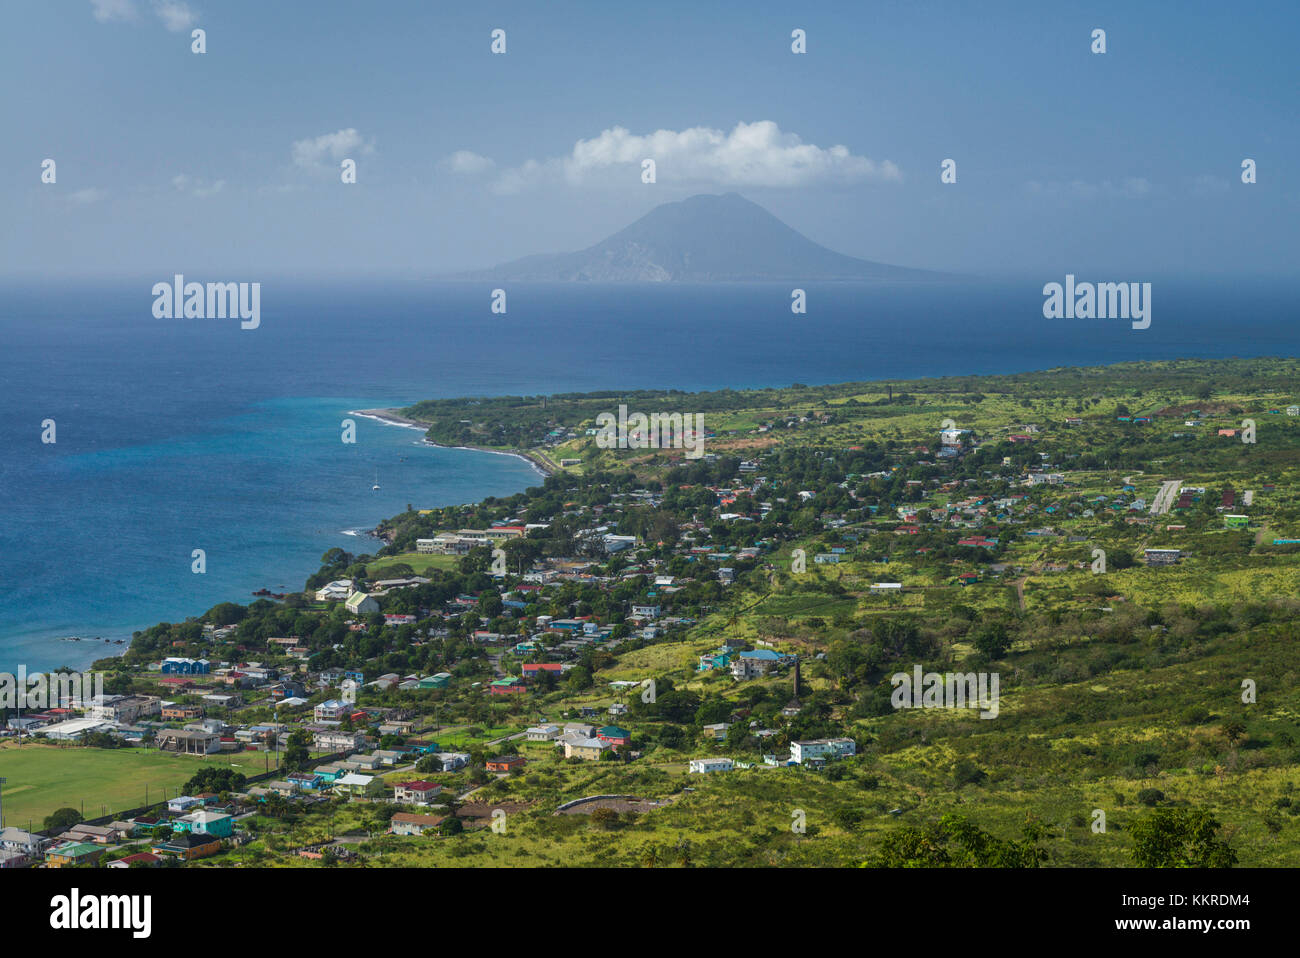 Saint Kitts et Nevis, St Kitts,., de Brimstone Hill, augmentation de la forteresse de Brimstone Hill sur la côte vers l'île de Santo Domingo Banque D'Images